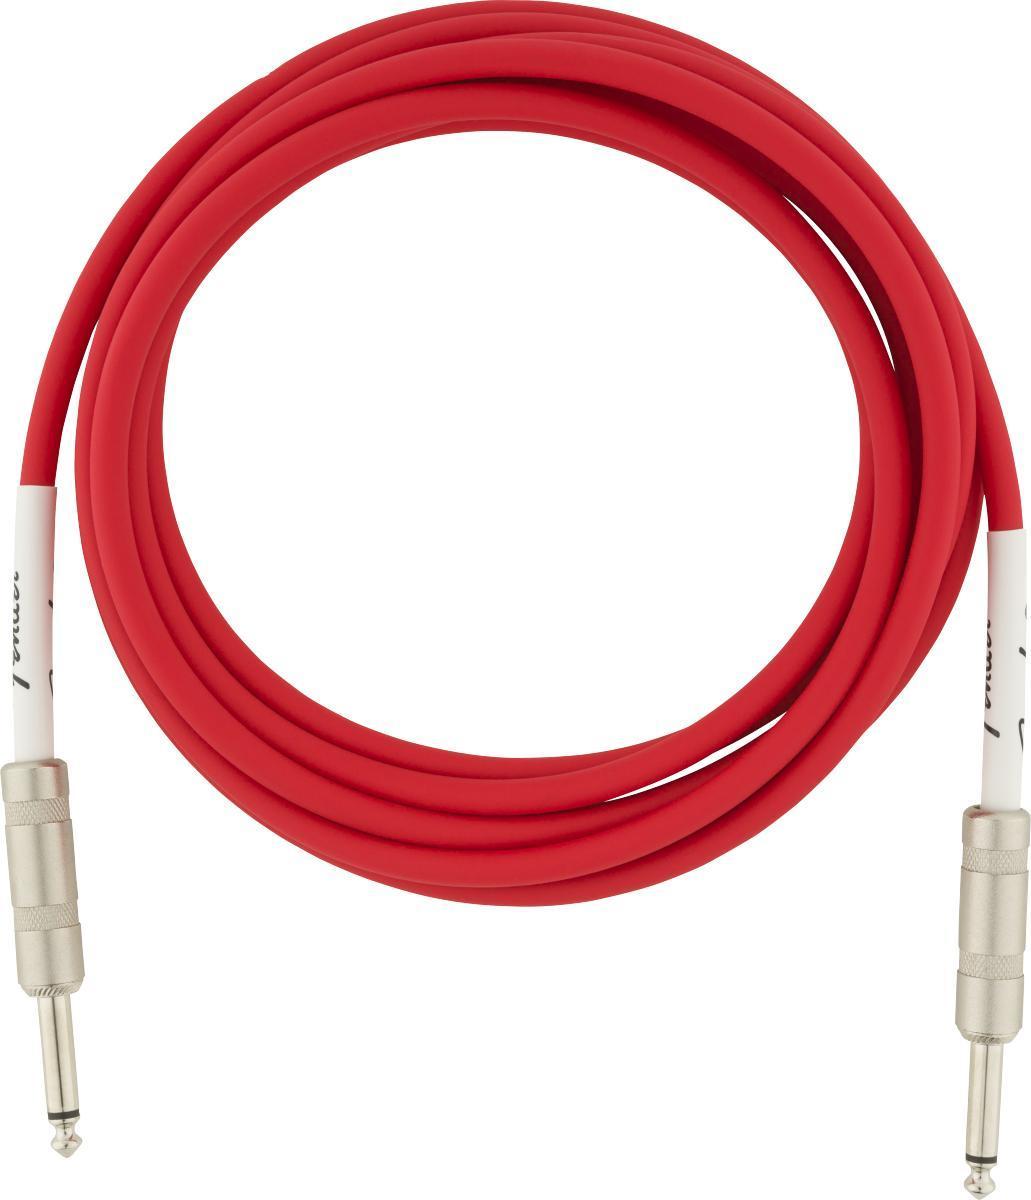 Kabel Fender Original Instrument Cable, 10ft - Fiesta Red